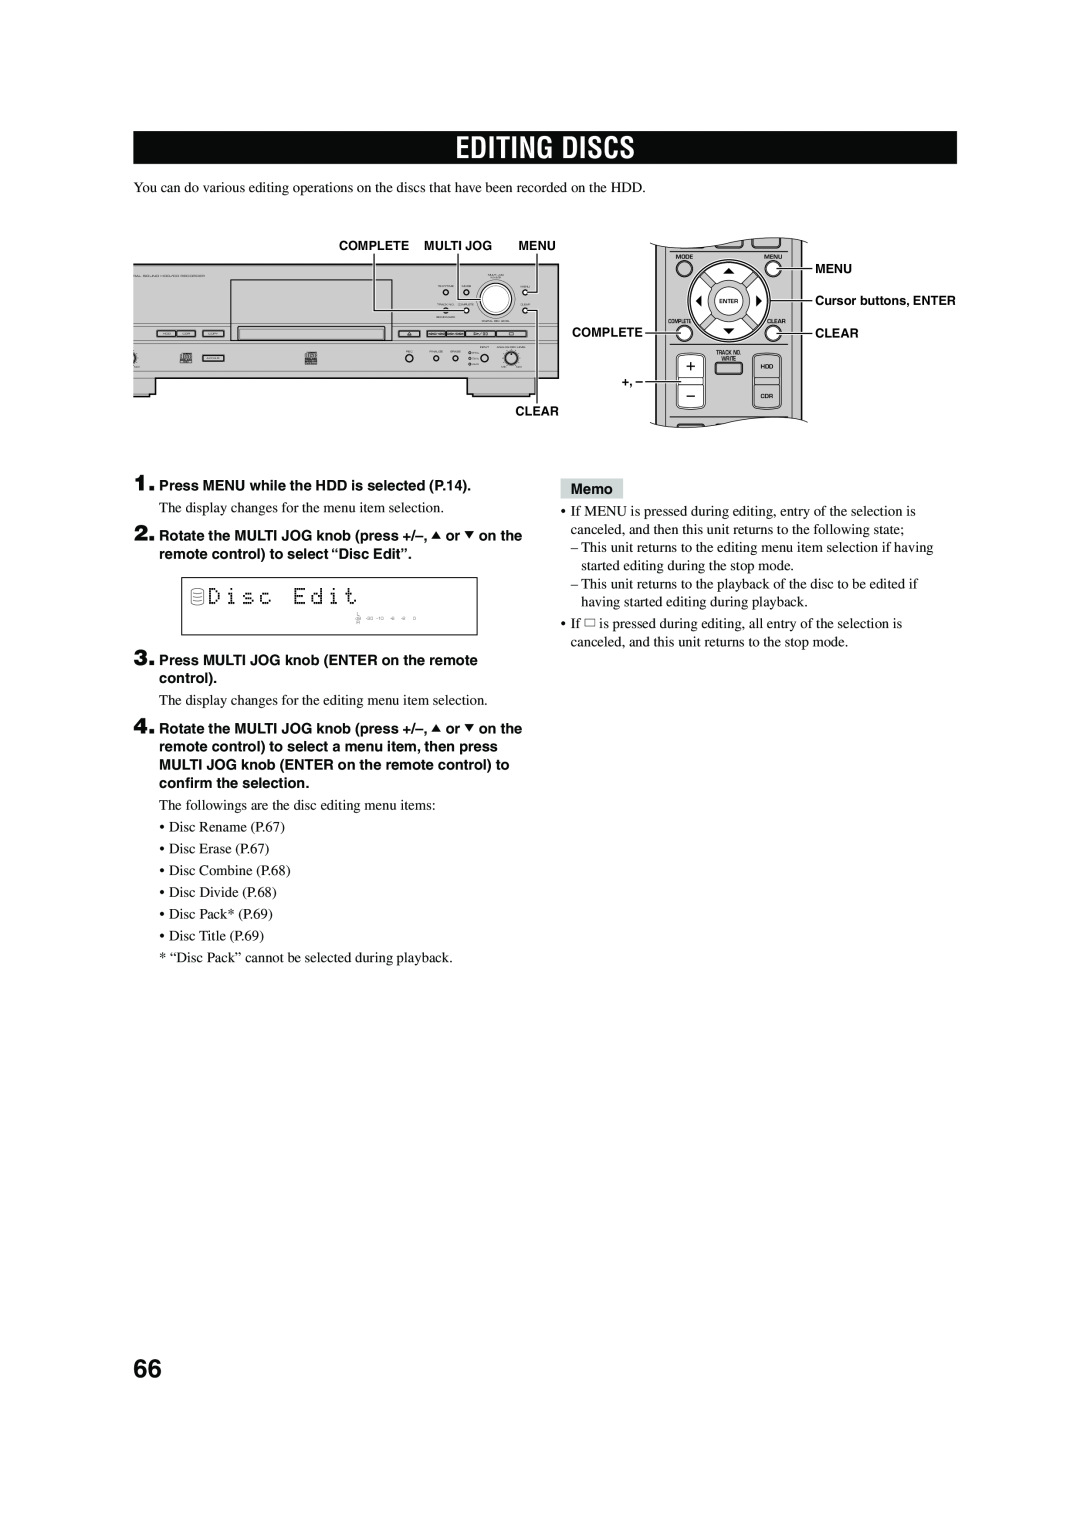 Yamaha CDR-HD 1500 owner manual Editing Discs, D i s c E d i t 